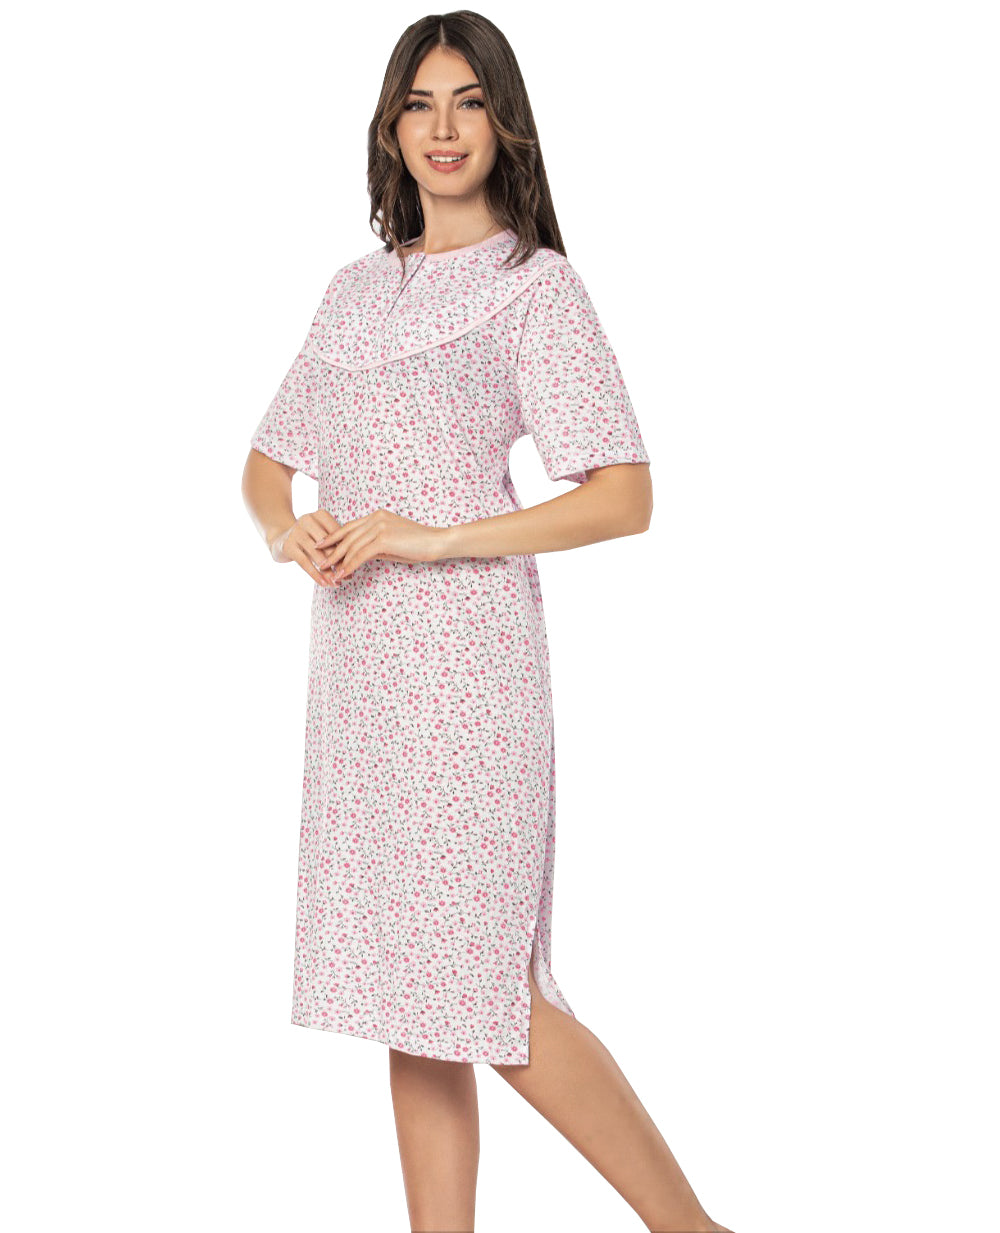 100% cotton Ladies Chemise Night Shirt Women Nightdress Nighties Suit NS-20-4